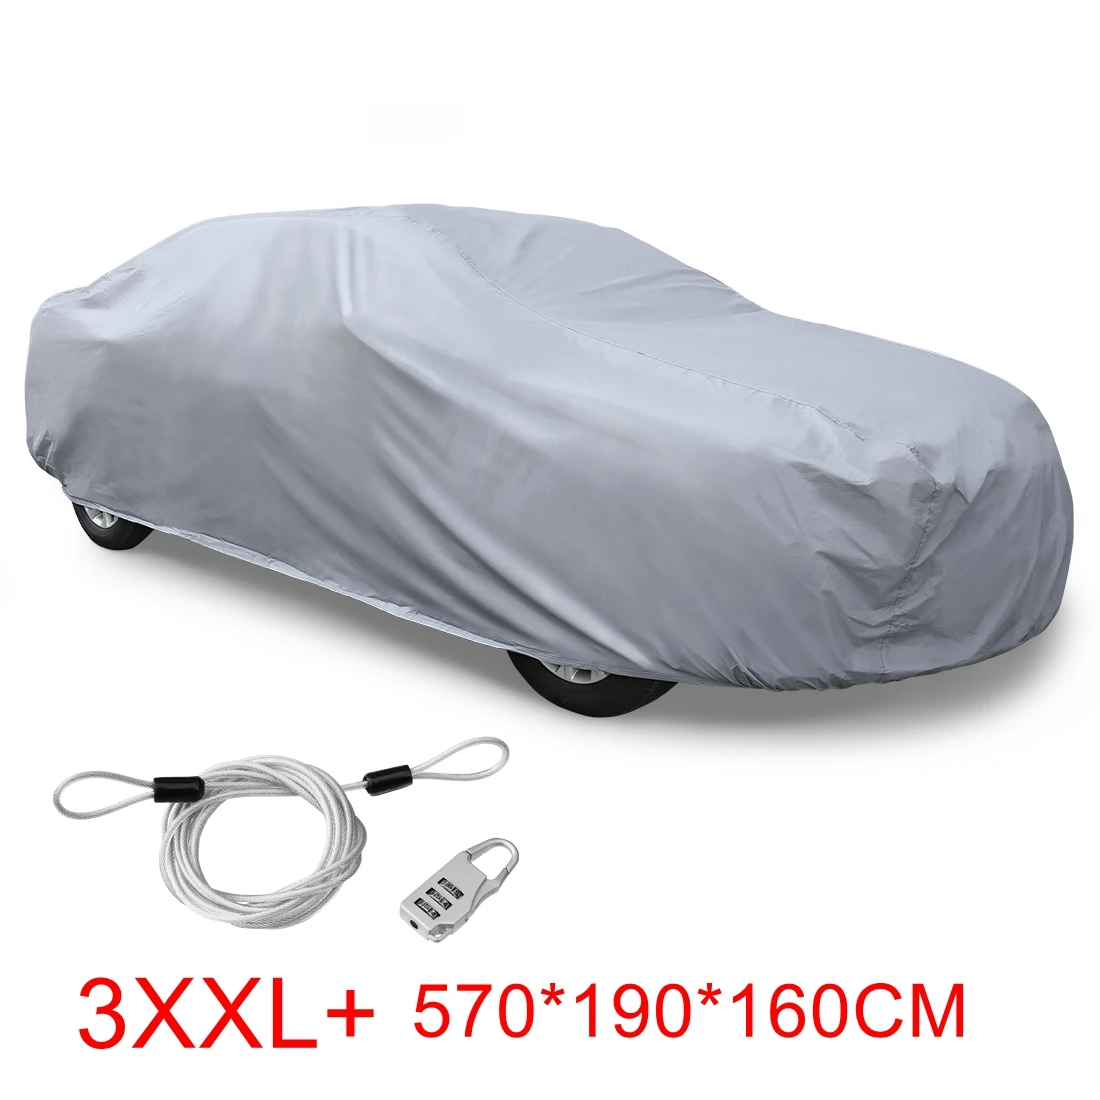 X Autohaux автомобильные чехлы наружные внутренние водонепроницаемые Защита от царапин Дождь Снег Солнце УФ термостойкий универсальный чехол для автомобиля DHL бесплатно - Color Name: 3XXL Plus Gray